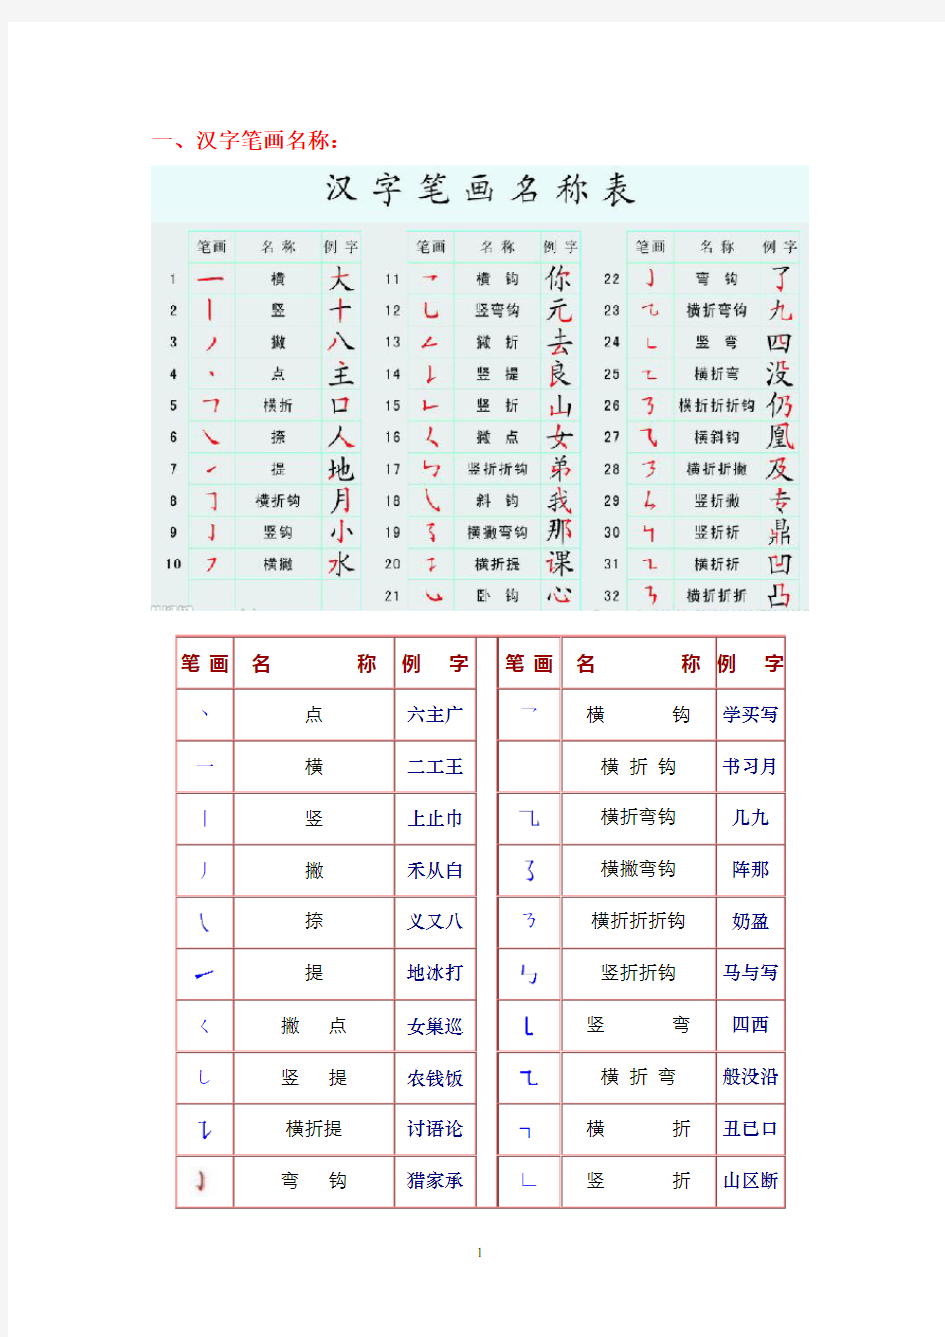 汉字笔画名称、笔顺规则、偏旁部首和间架结构